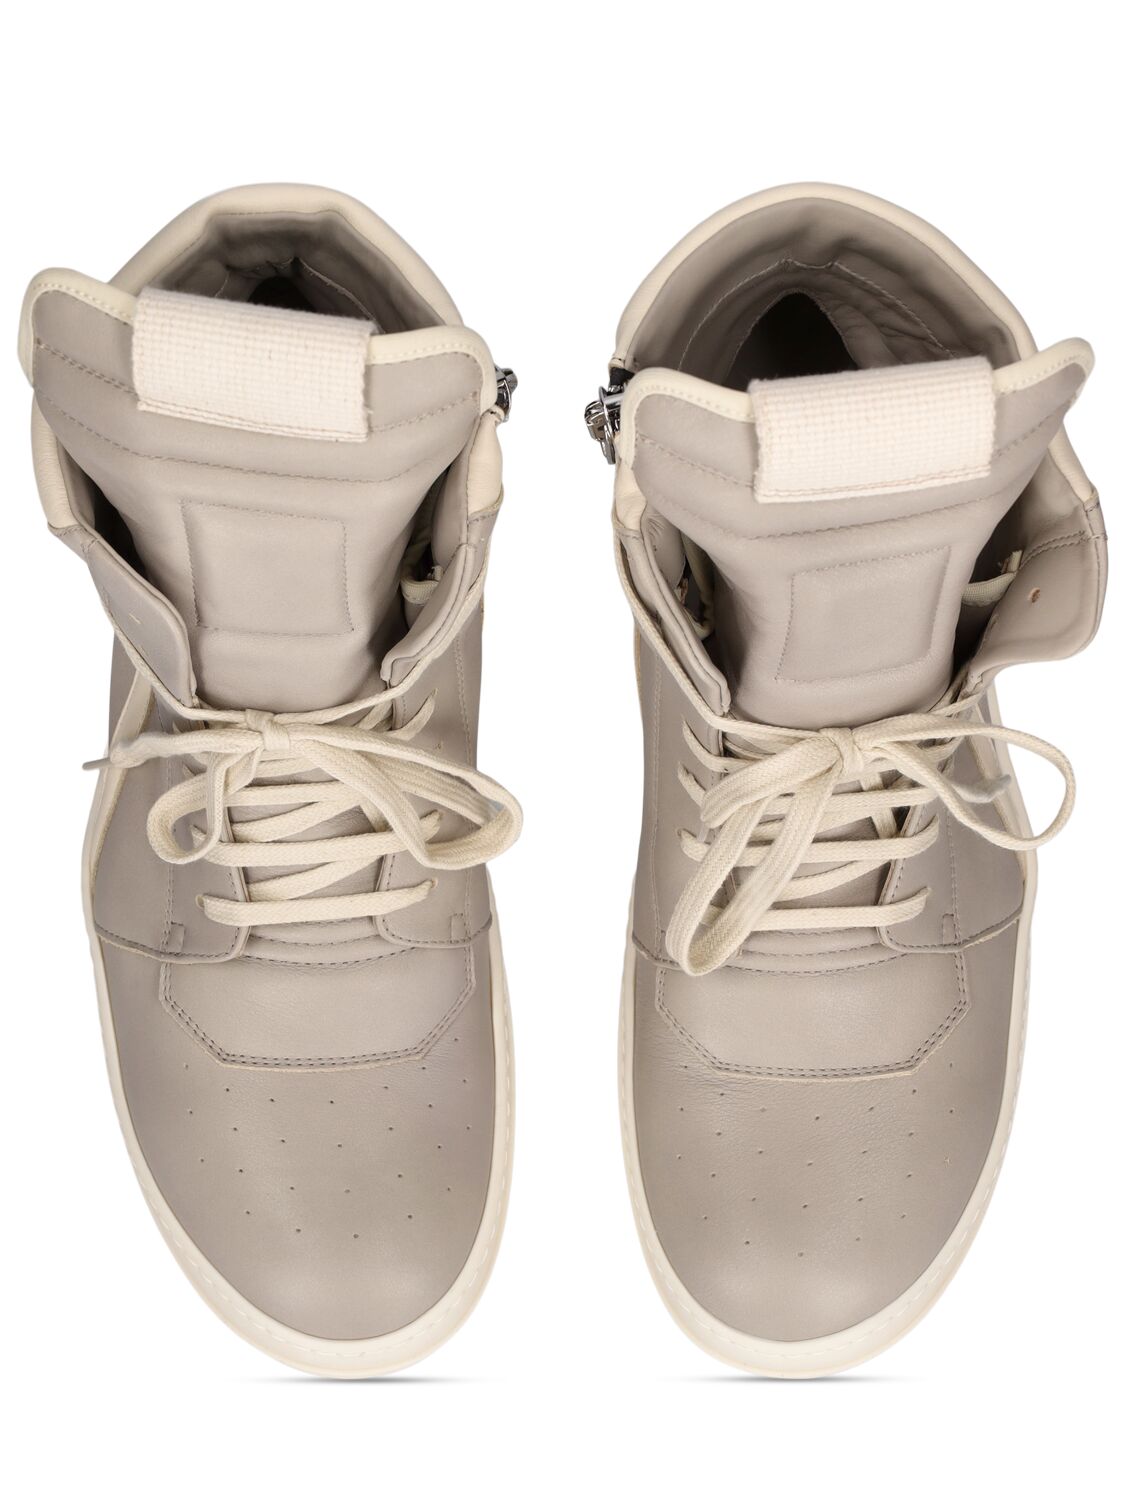 Shop Rick Owens Geobasket Leather High Top Sneakers In Pearl,milk Milk